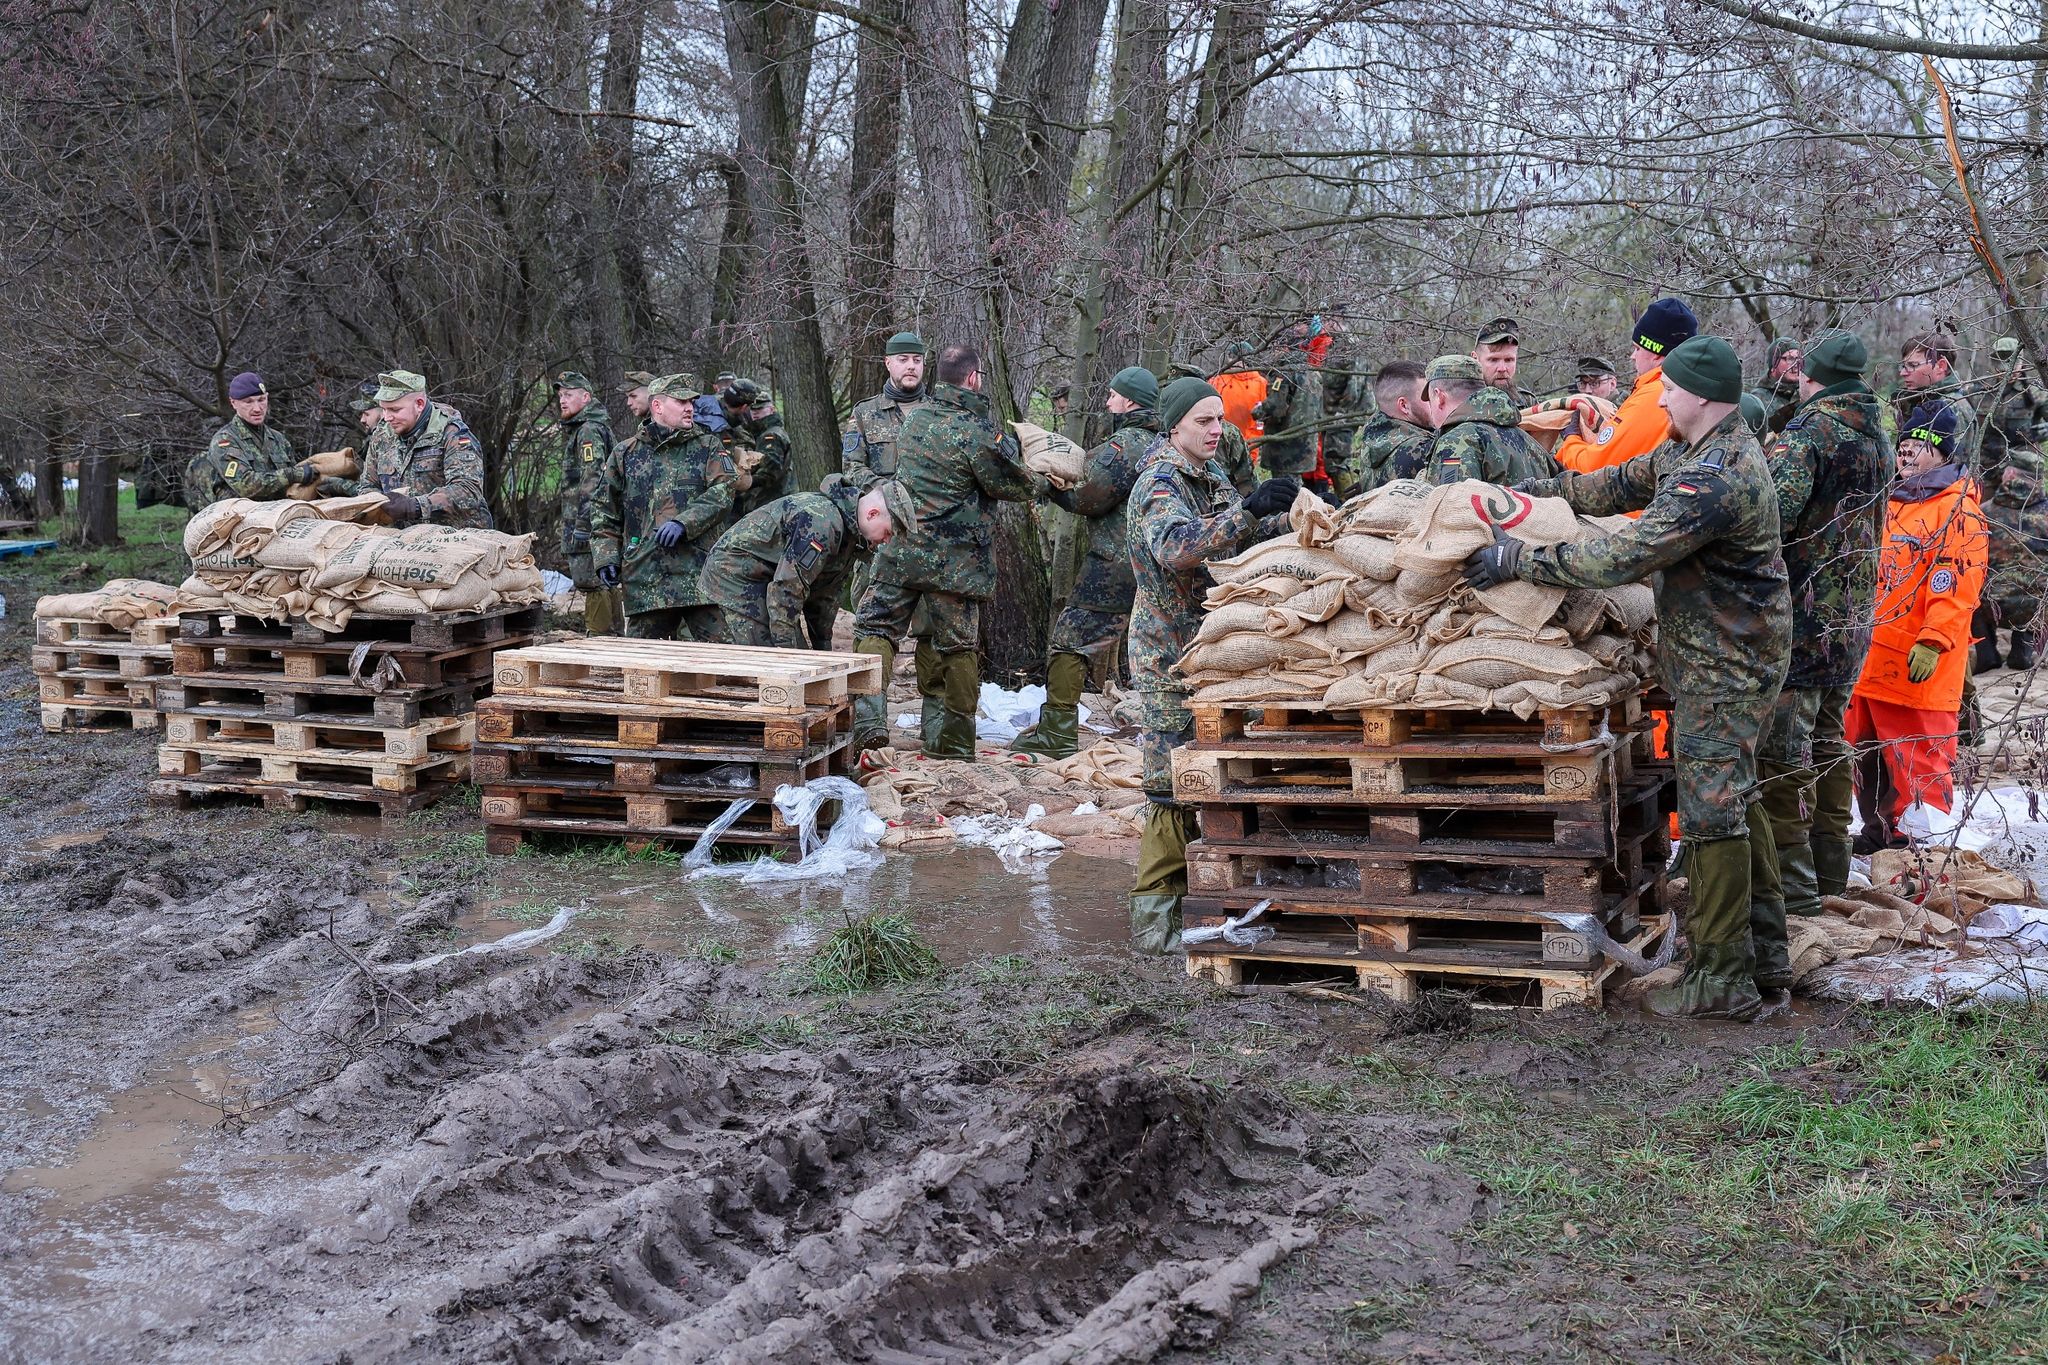 hochwassergebiet: soldaten nur bei tageslicht im einsatz